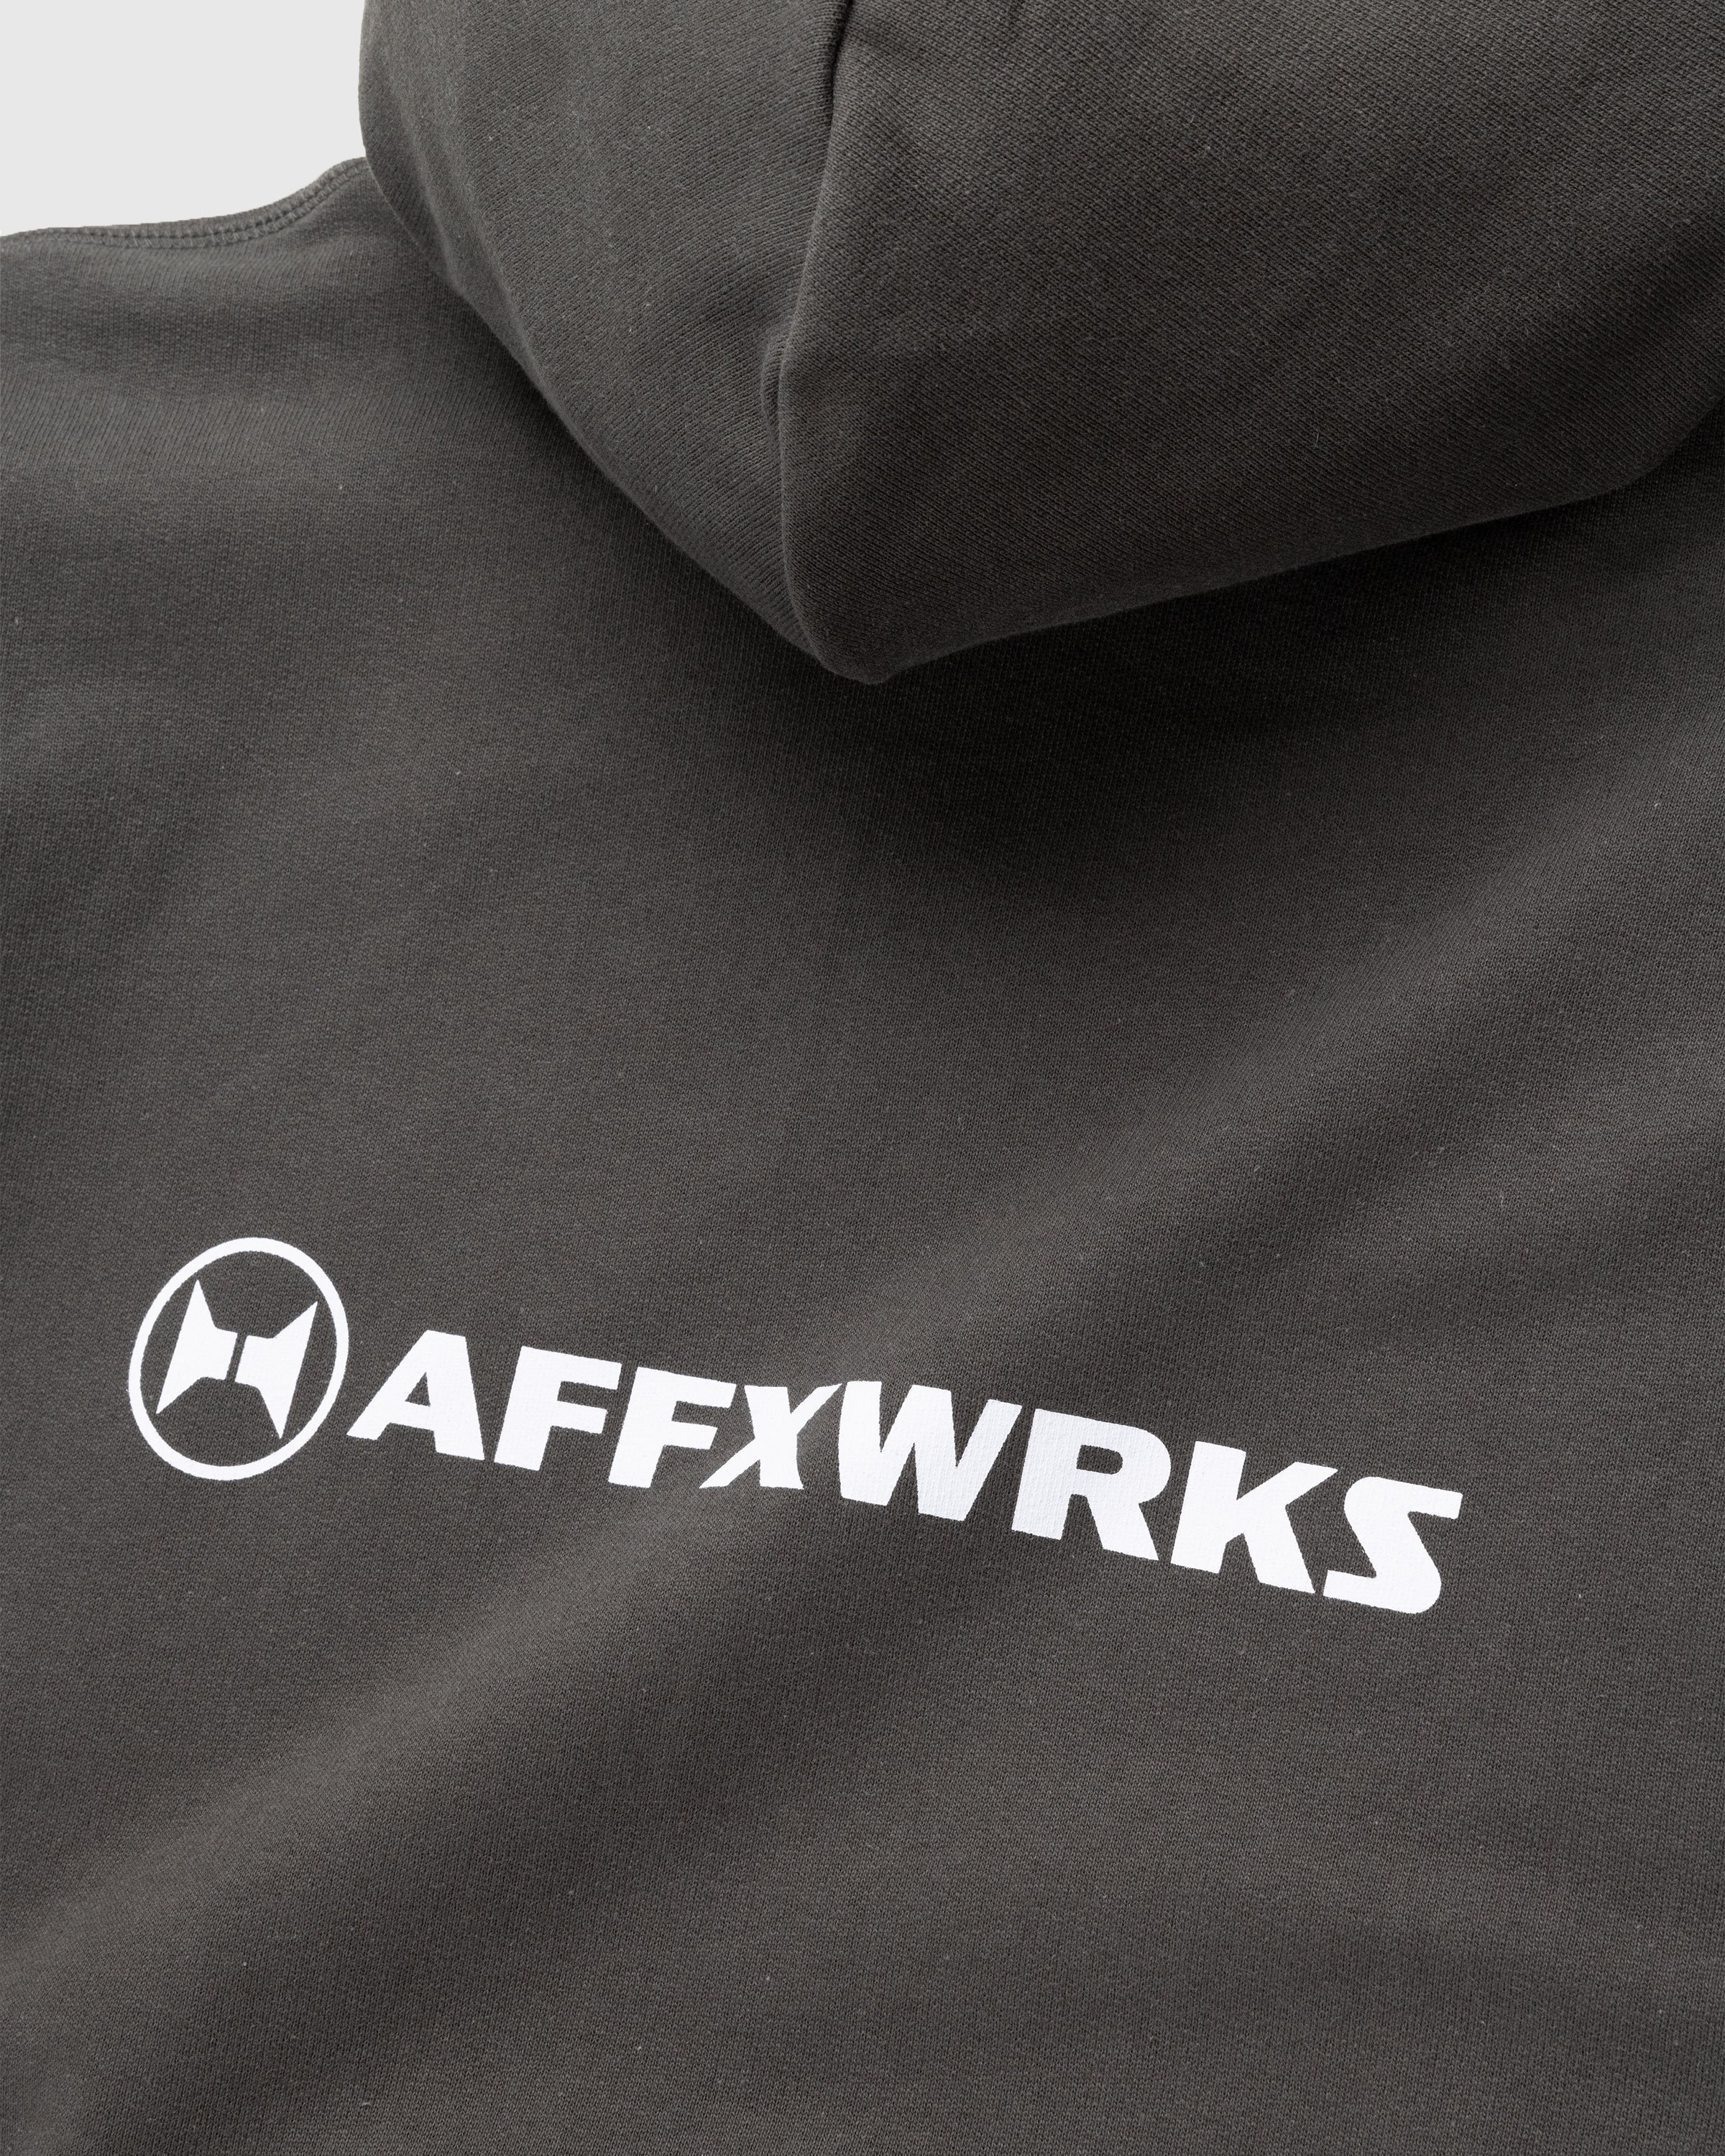 AFFXWRKS - AFFXWRKS HOODIE - Clothing - Black - Image 8